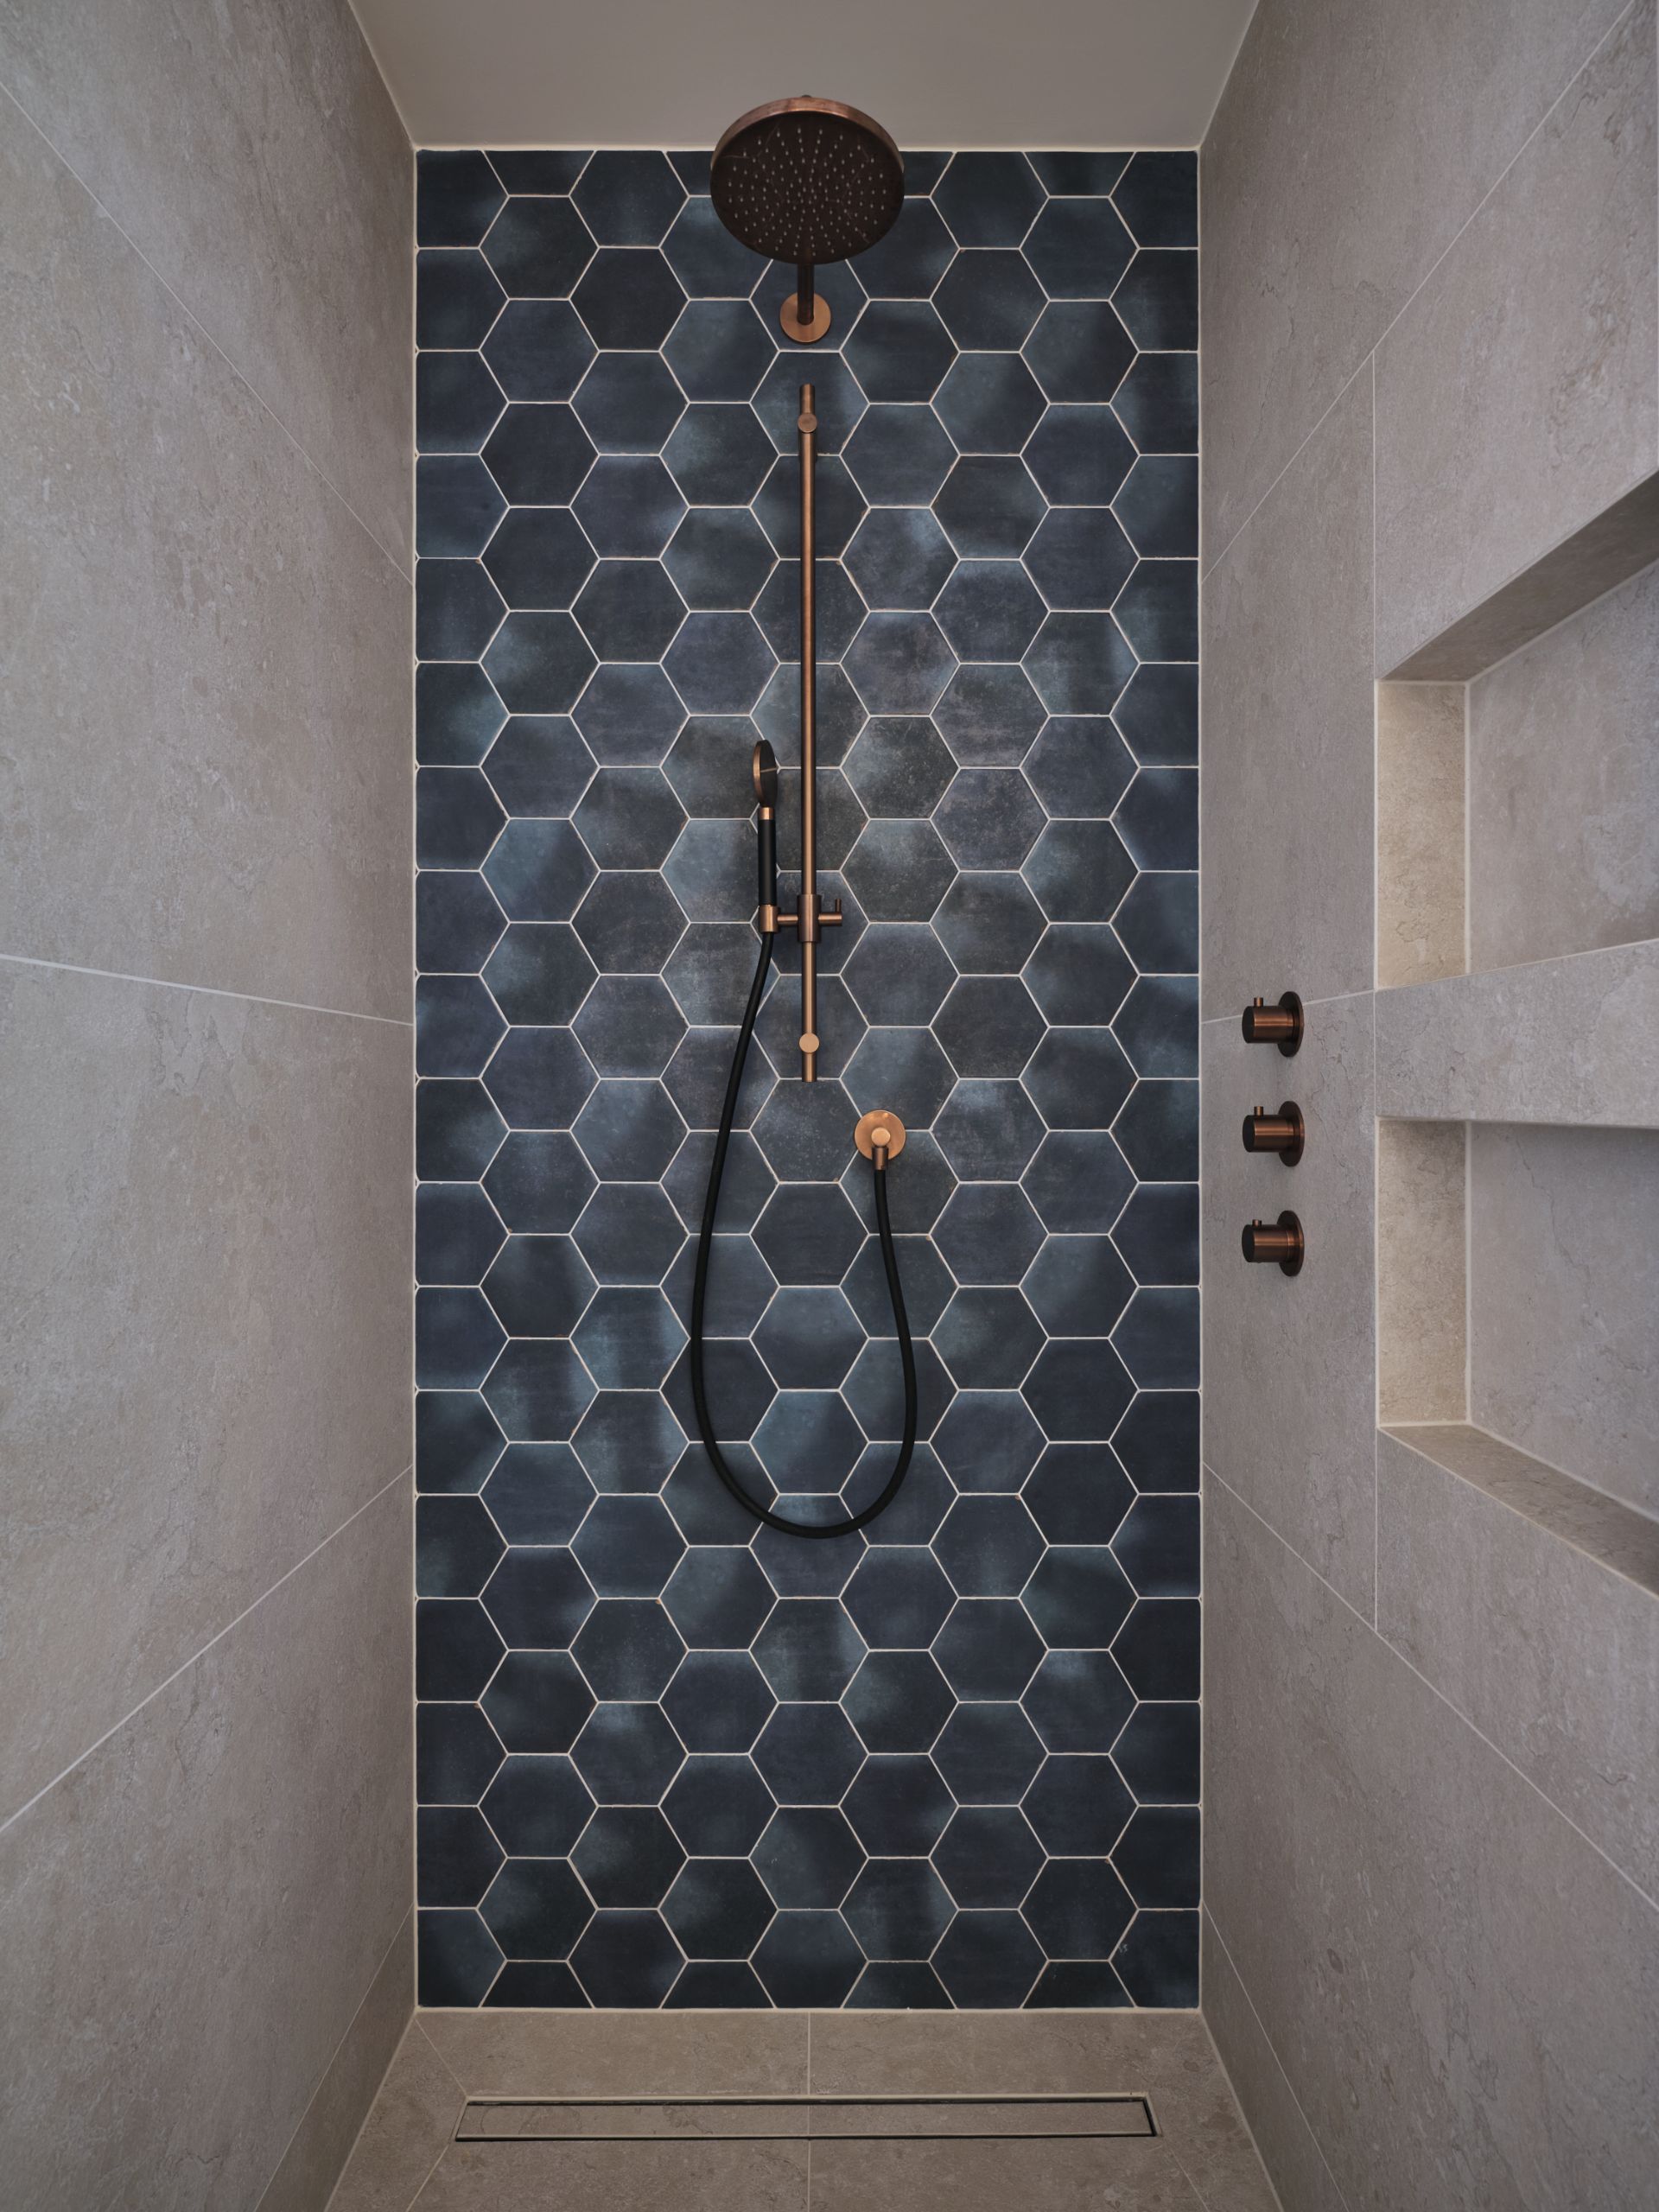 Foto: een frisse look met blauwe hexagon tegels    eerste kamer badkamers   002